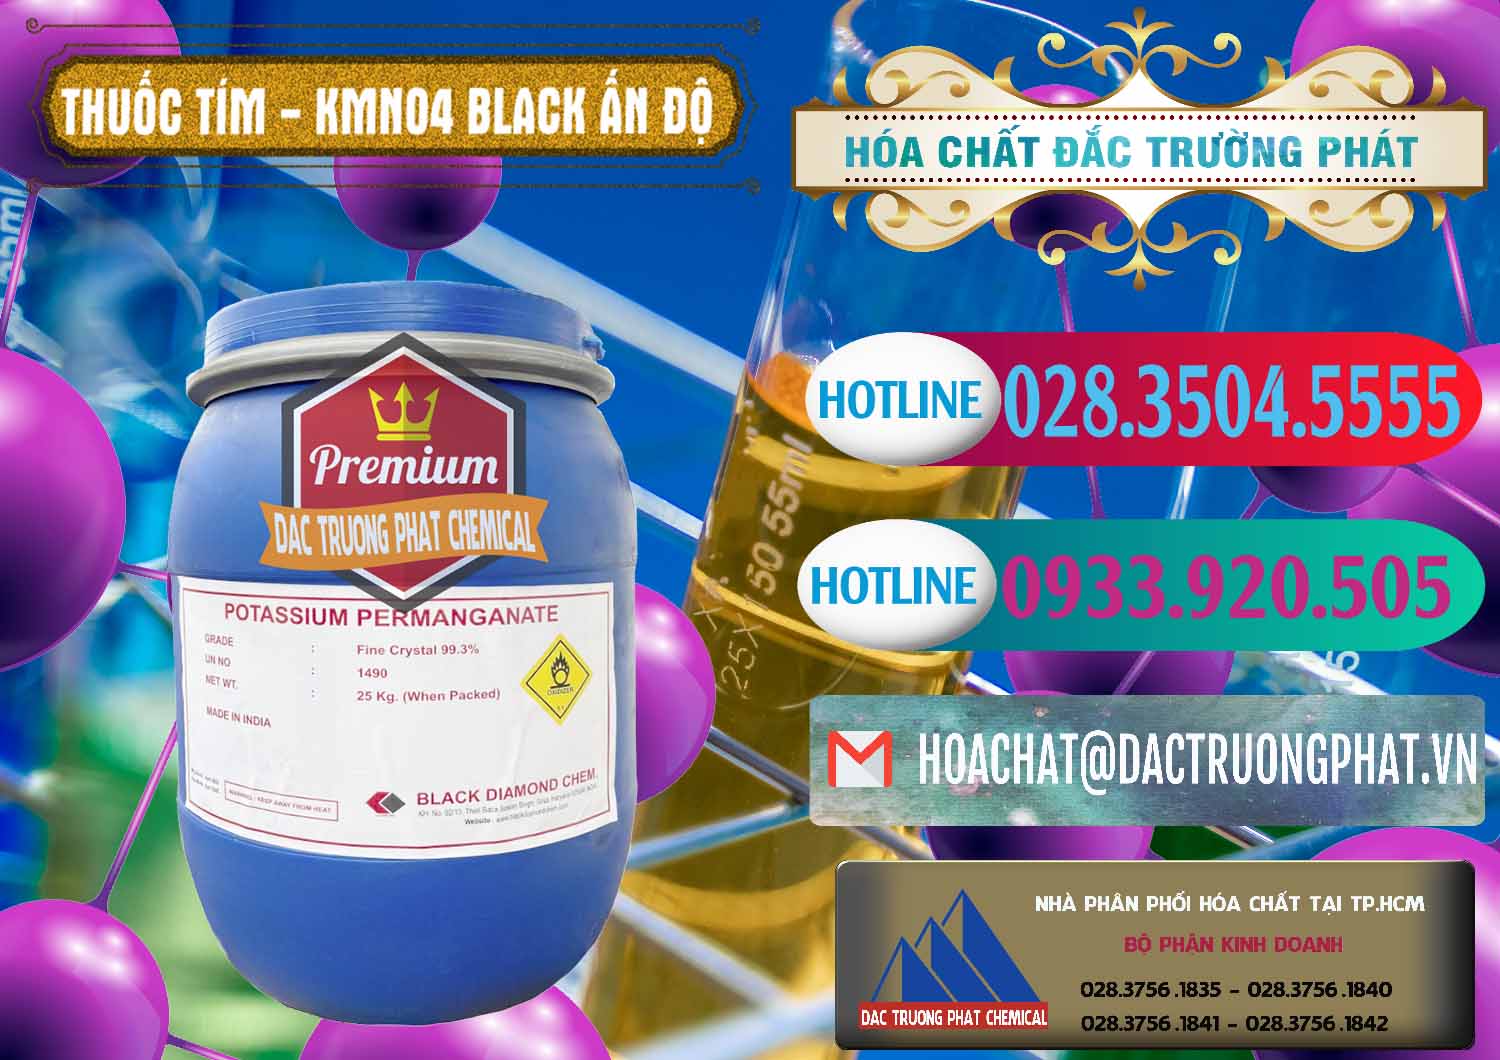 Cty chuyên bán - cung ứng Thuốc Tím - KMNO4 Black Diamond Ấn Độ India - 0414 - Đơn vị bán _ cung cấp hóa chất tại TP.HCM - truongphat.vn